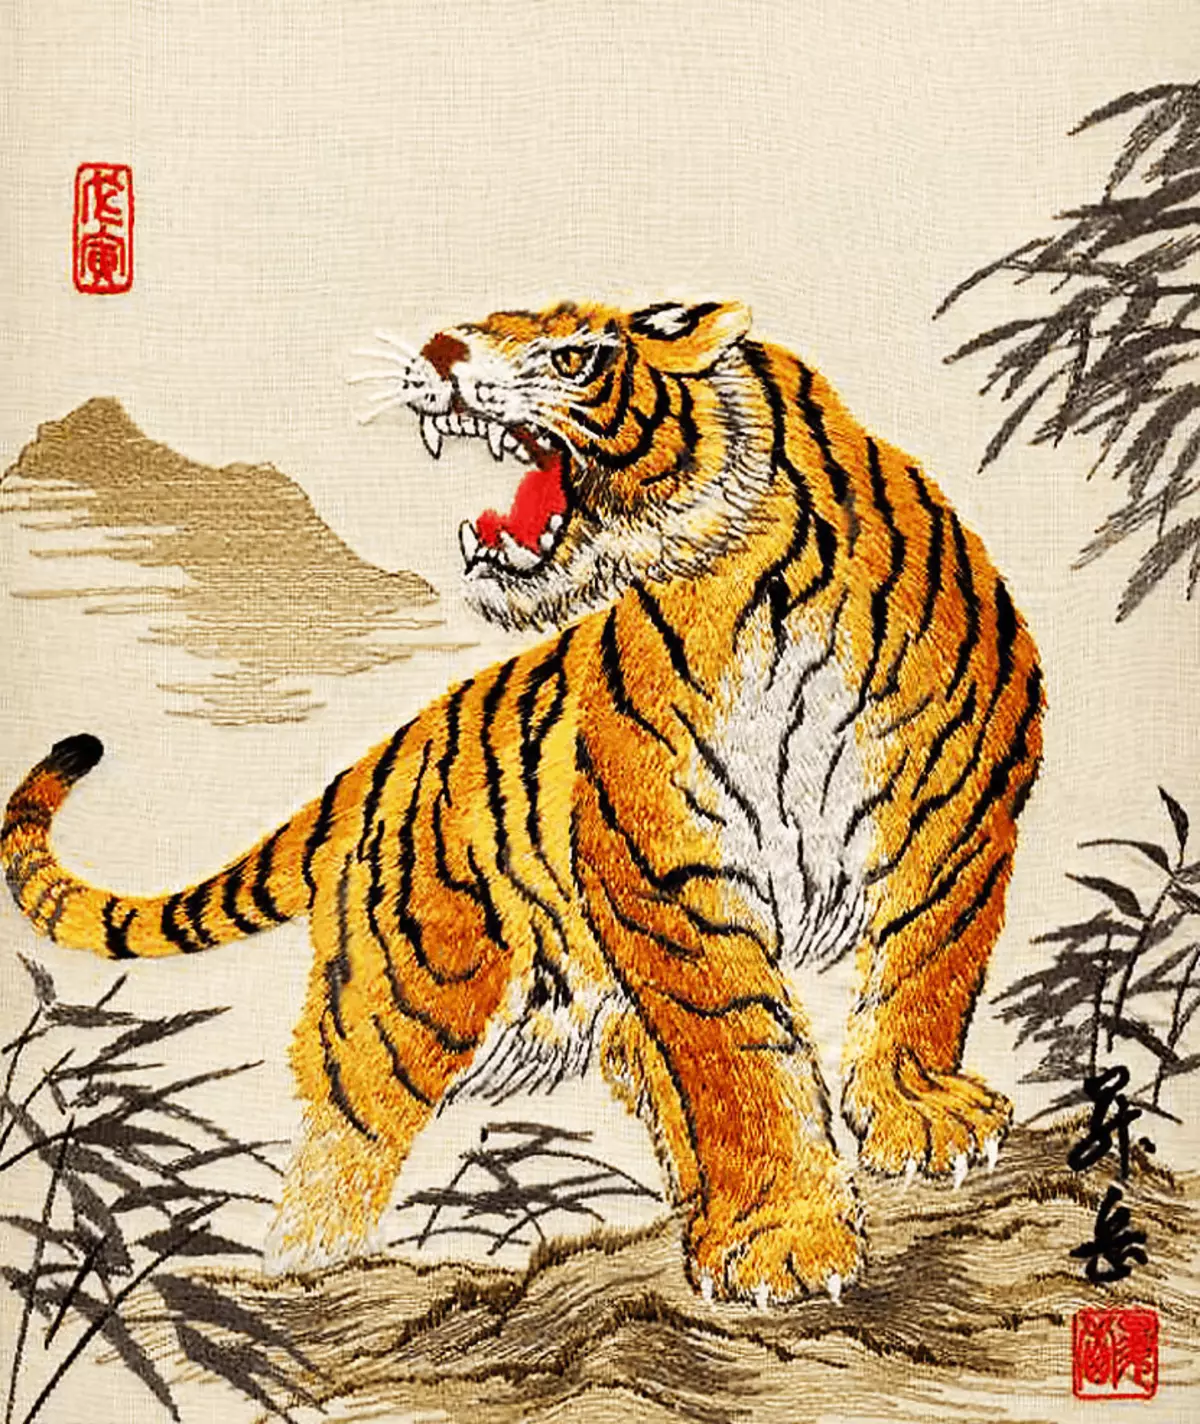 Horoskop Timur Tiger.